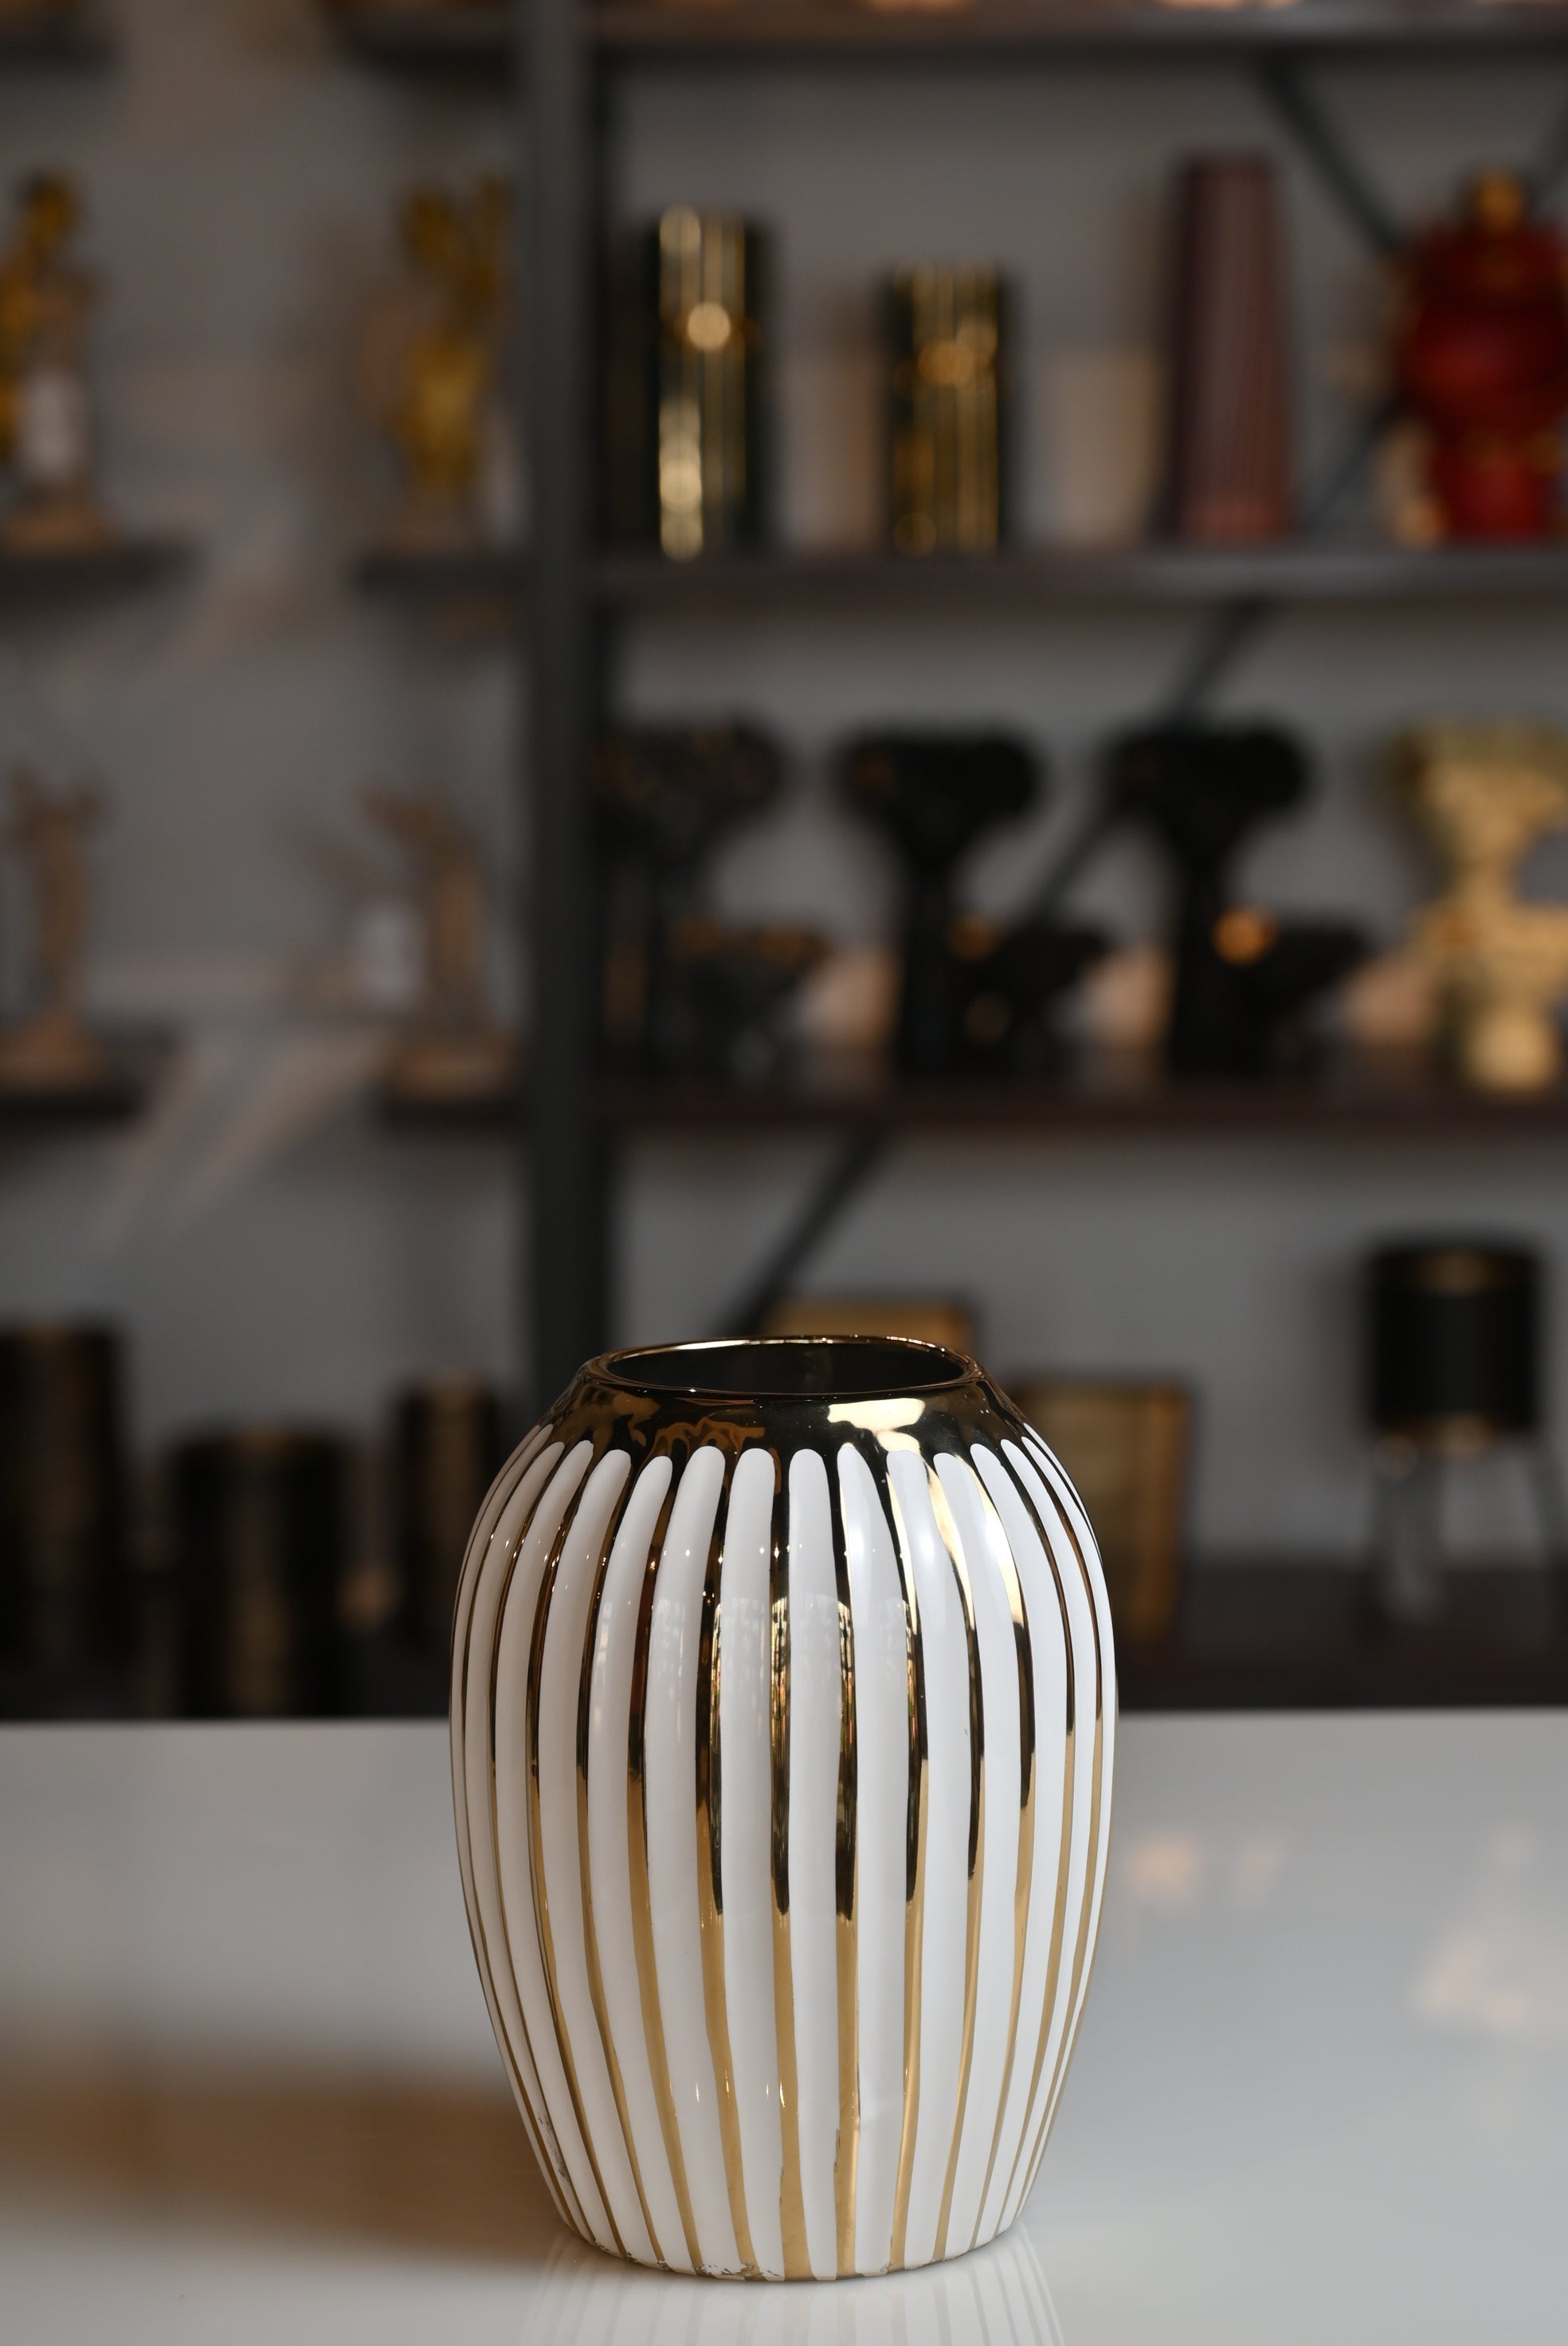 Classic White and Golden Ceramic Vase